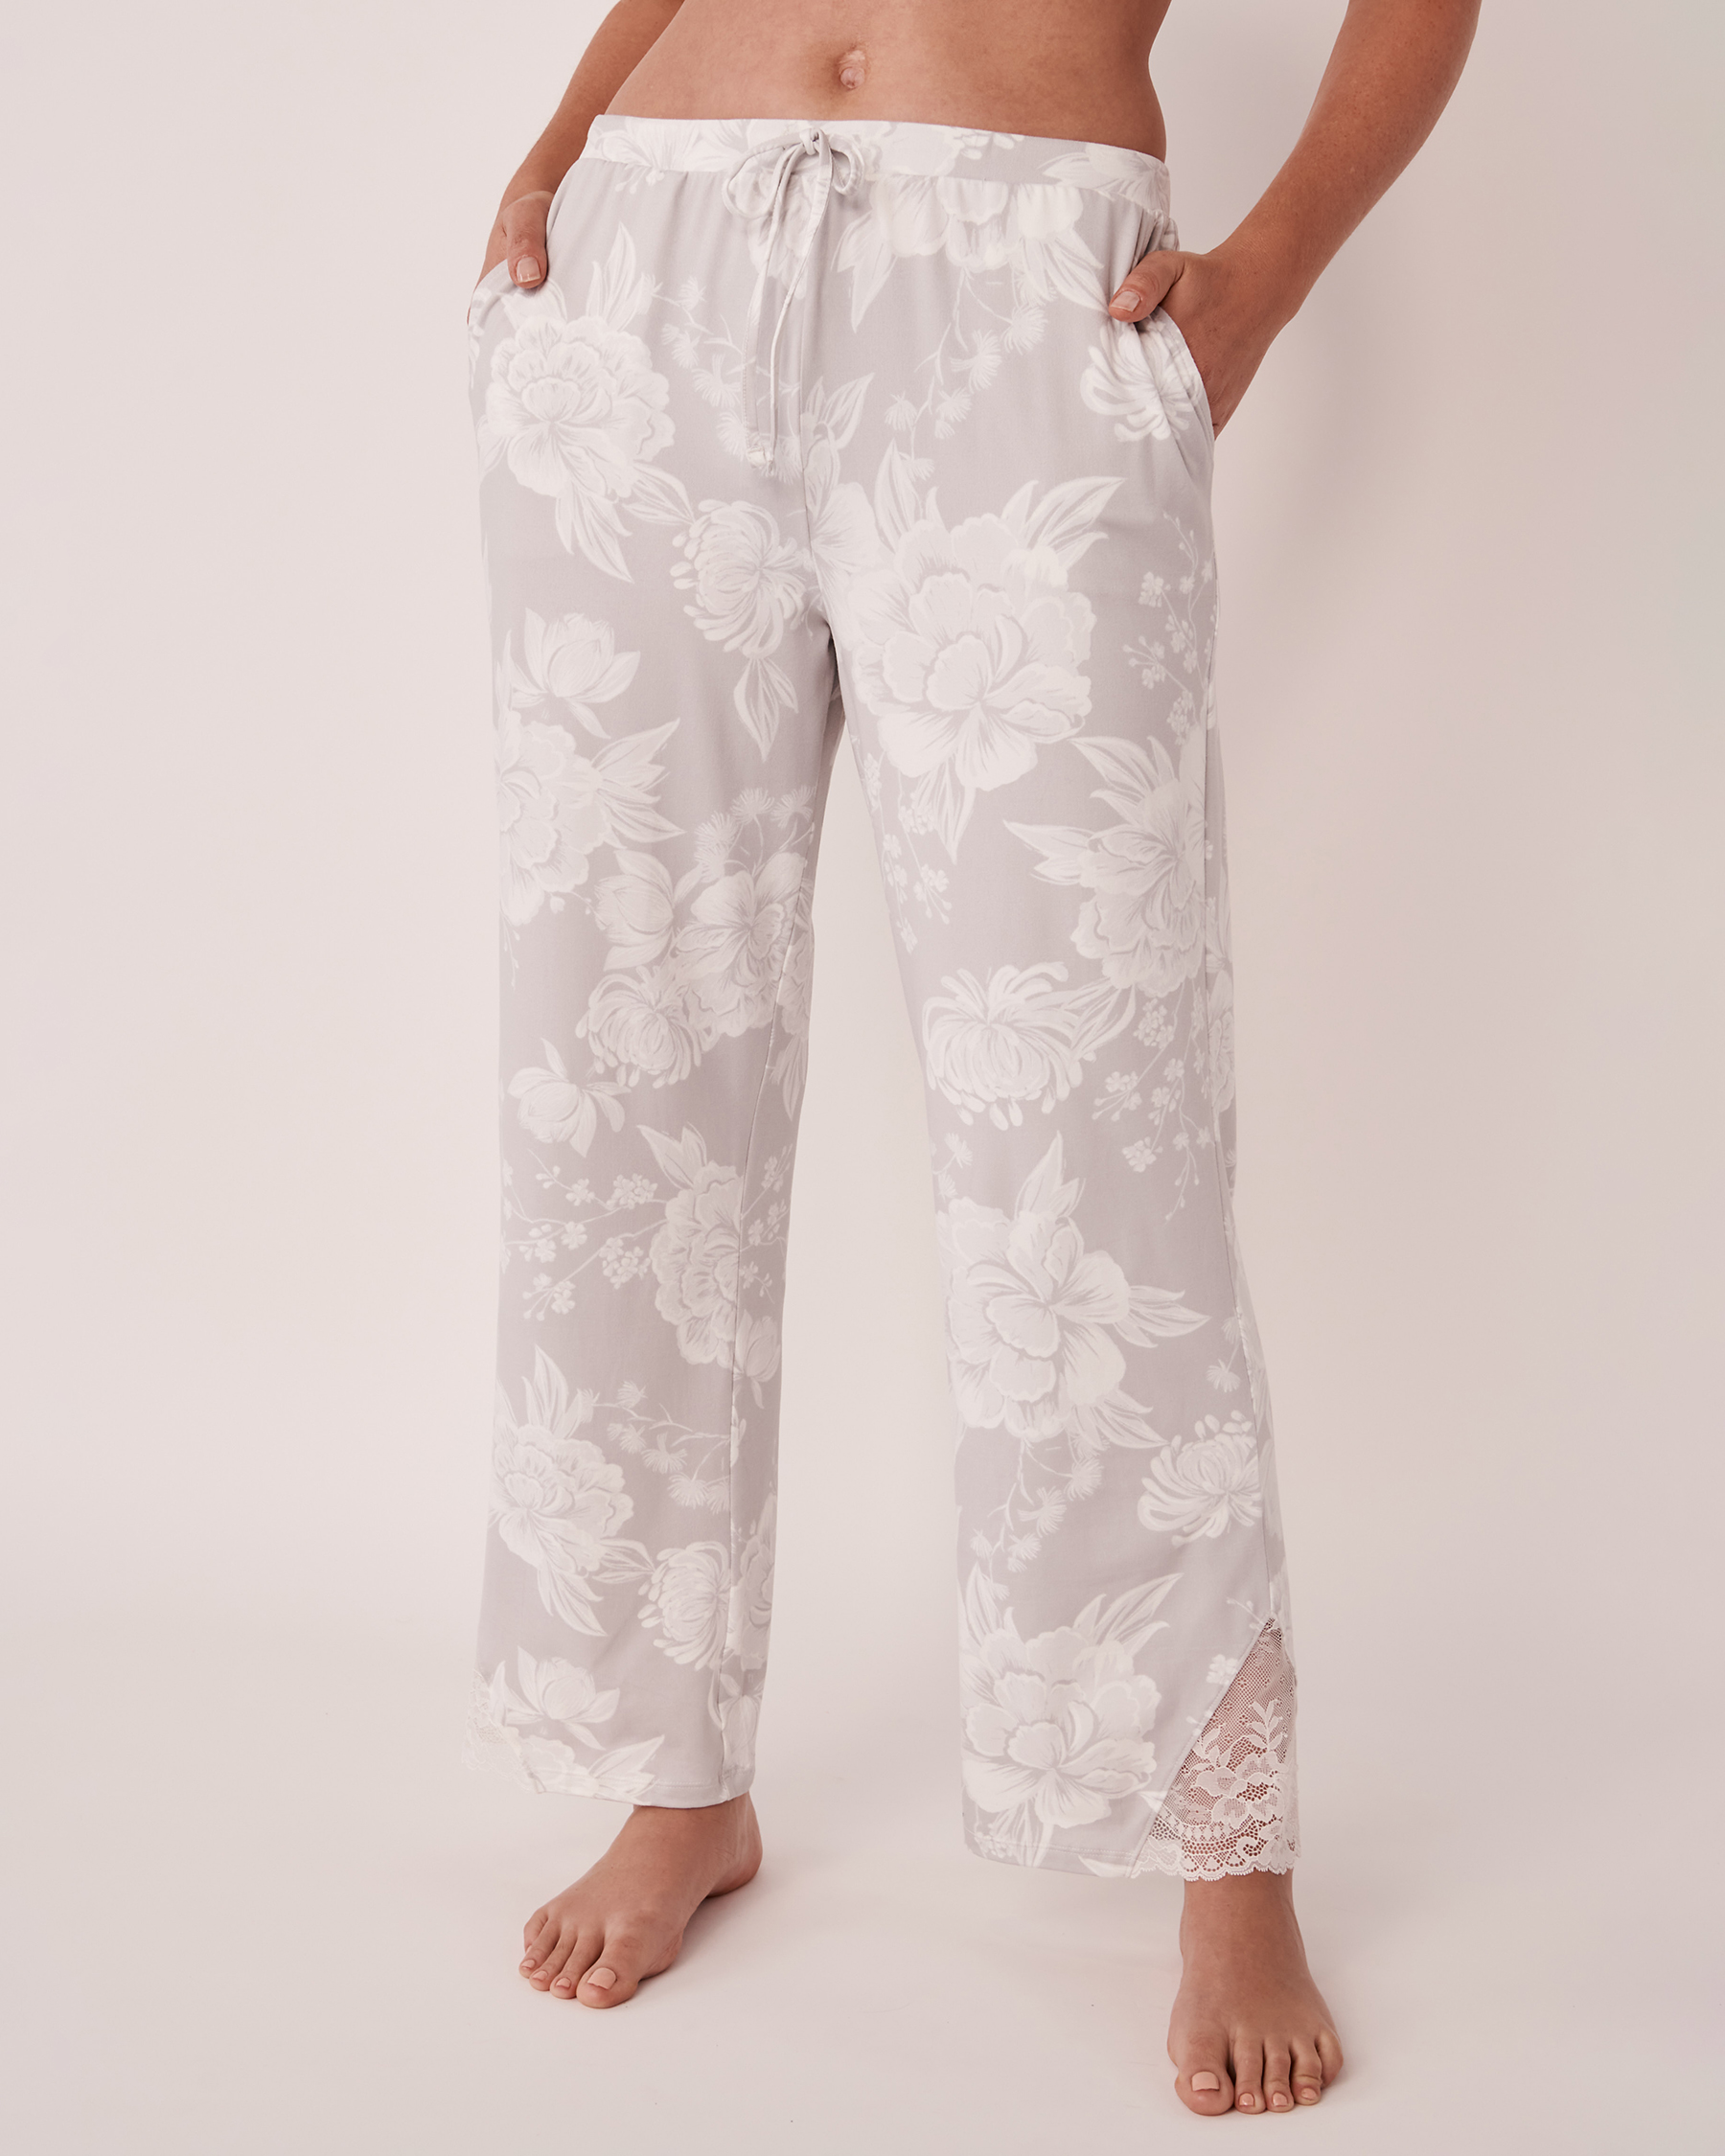 LA VIE EN ROSE Pantalon ultra doux détail de dentelle Floral gris romantique 40200355 - Voir1